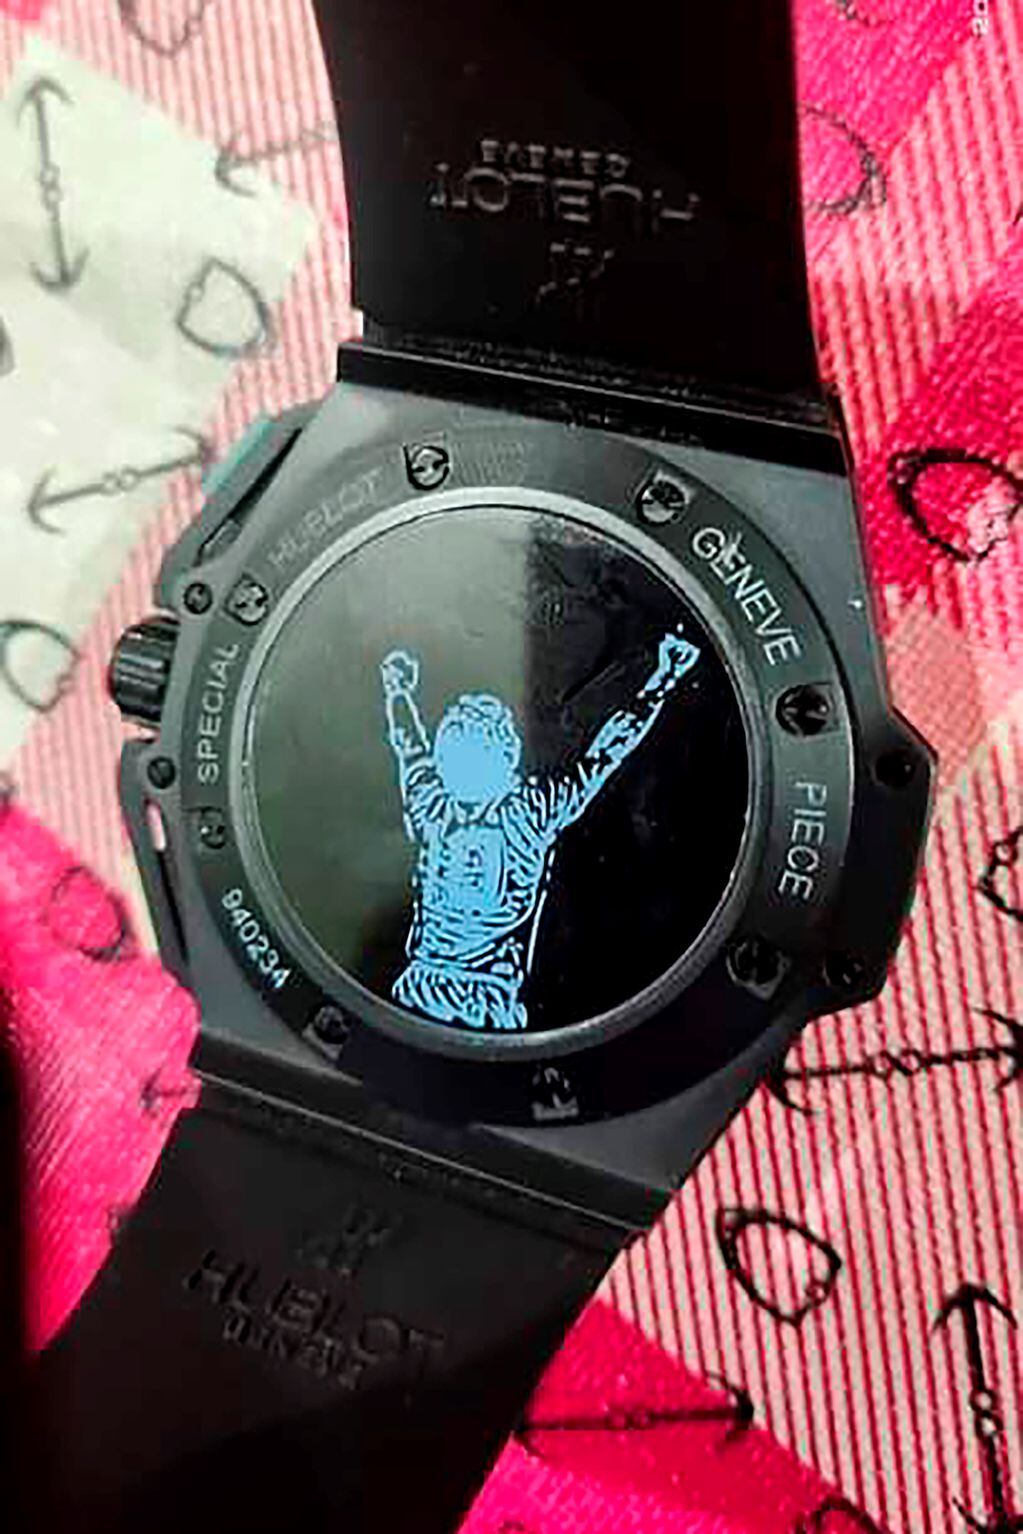 El reloj tiene la foto de la camiseta de Diego Maradona.